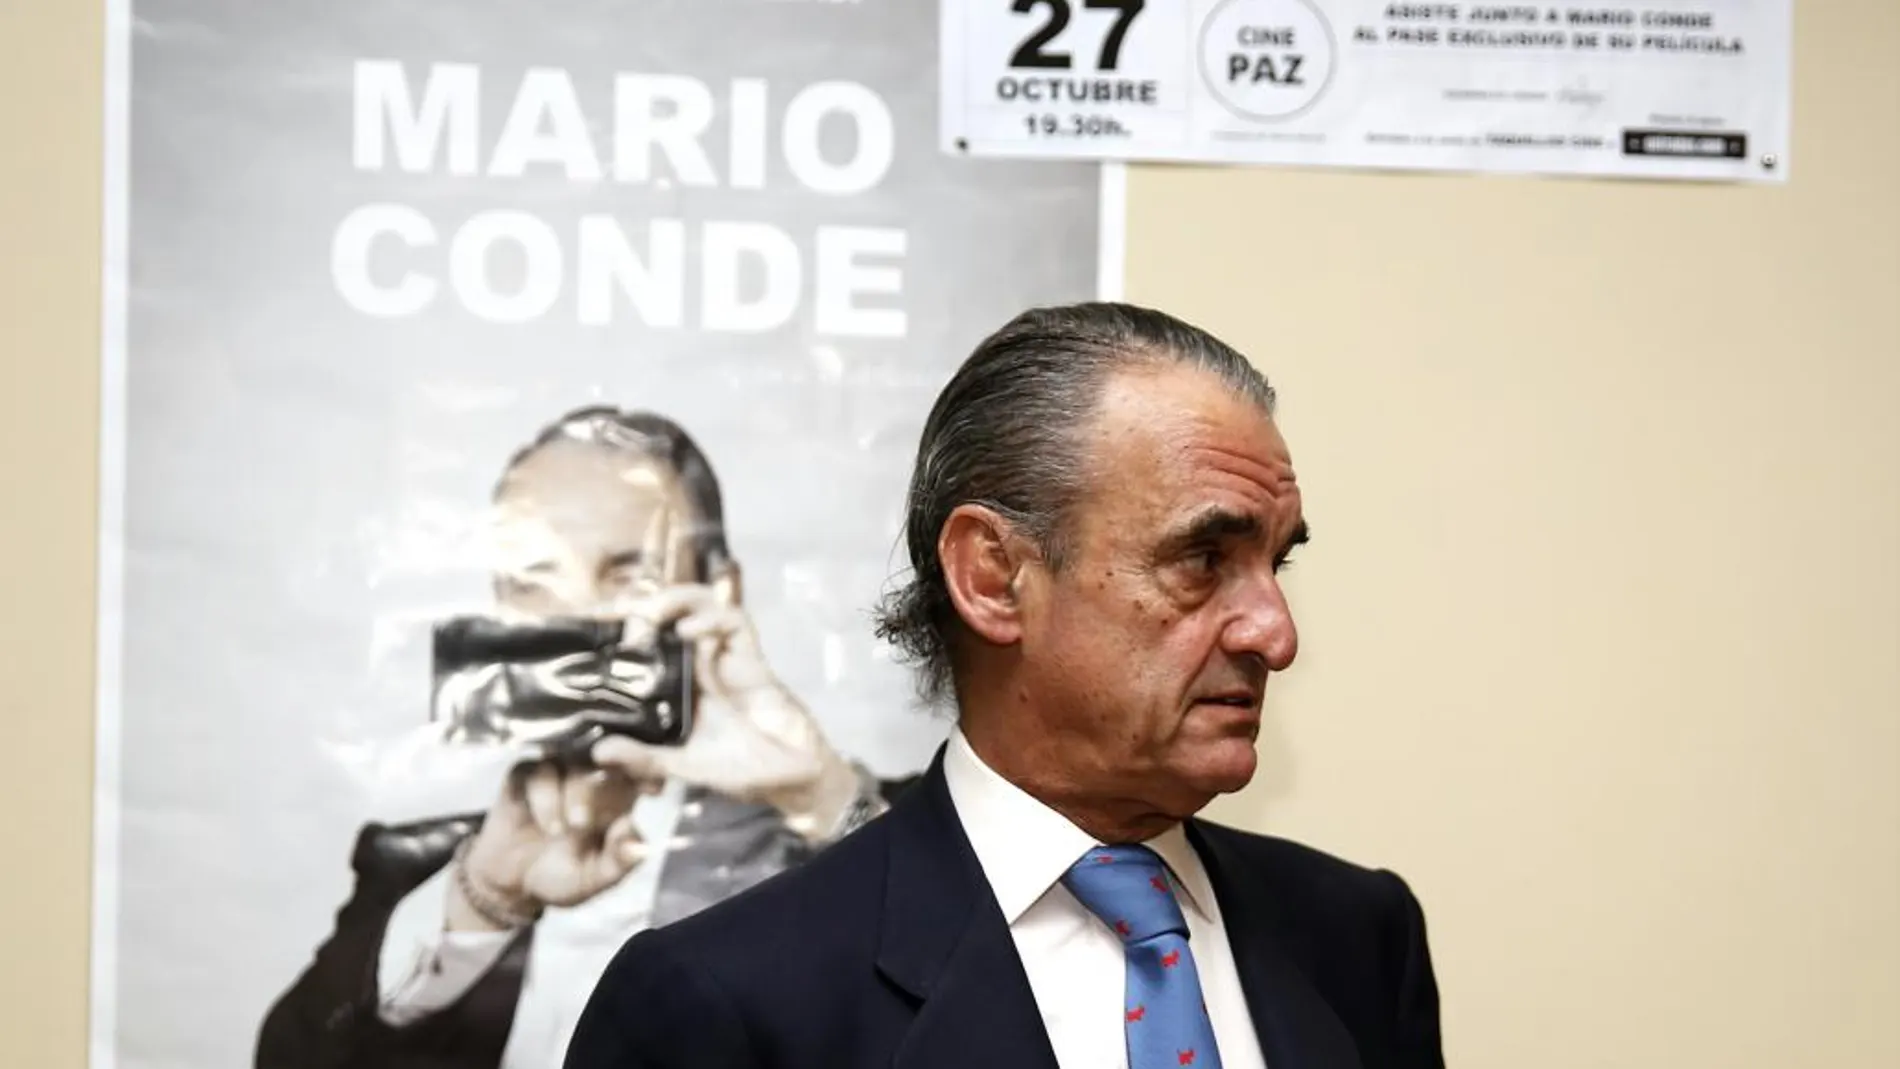 El expresidente de Banesto, Mario Conde